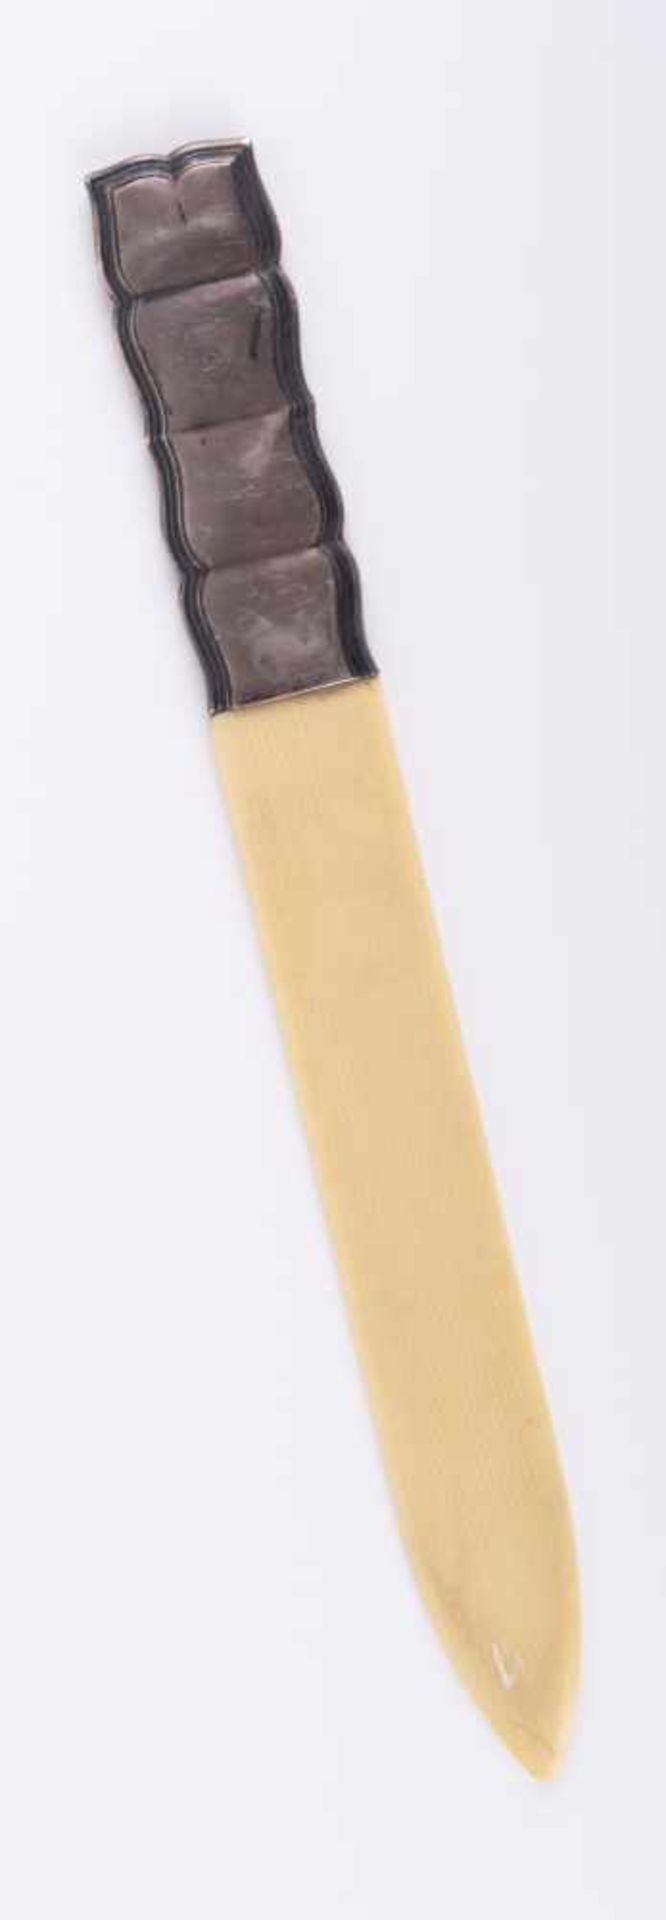 Brieföffner 19. Jhd. / Letter opener, 19th century Silbergriff 830/000 mit Bakelitschneide, gepunzt, - Bild 2 aus 8